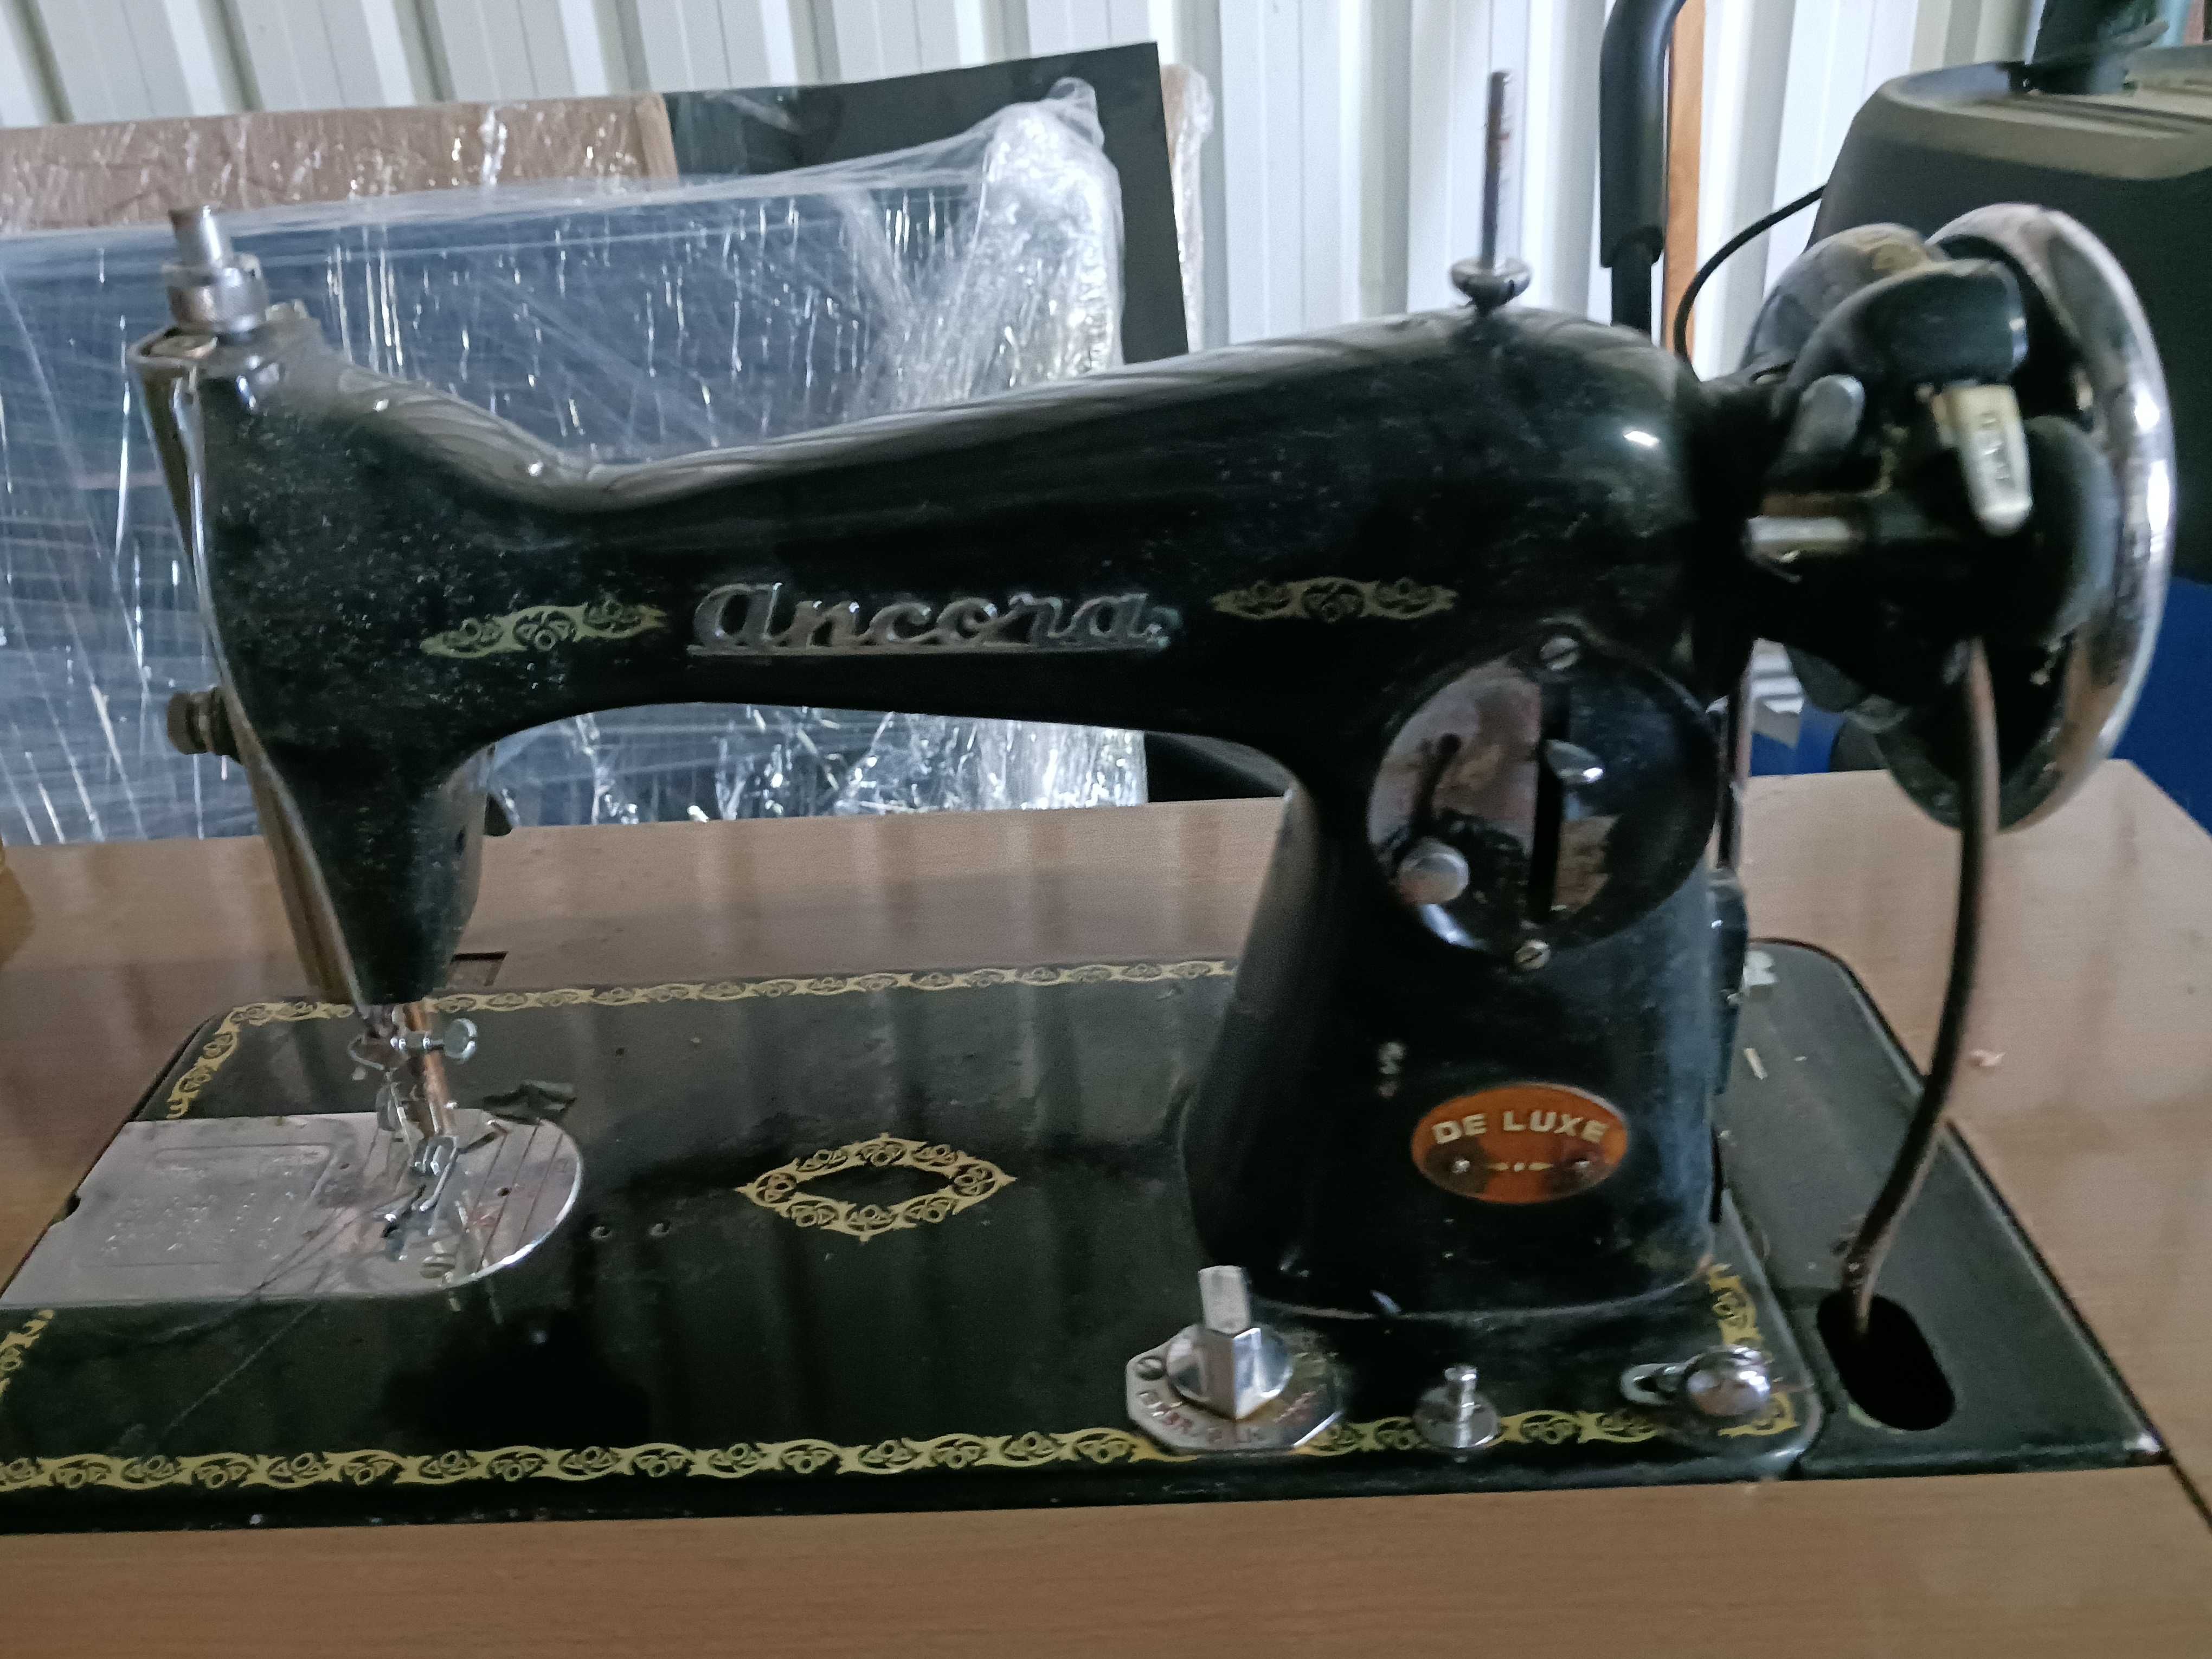 Maquina costura a pedal com correia